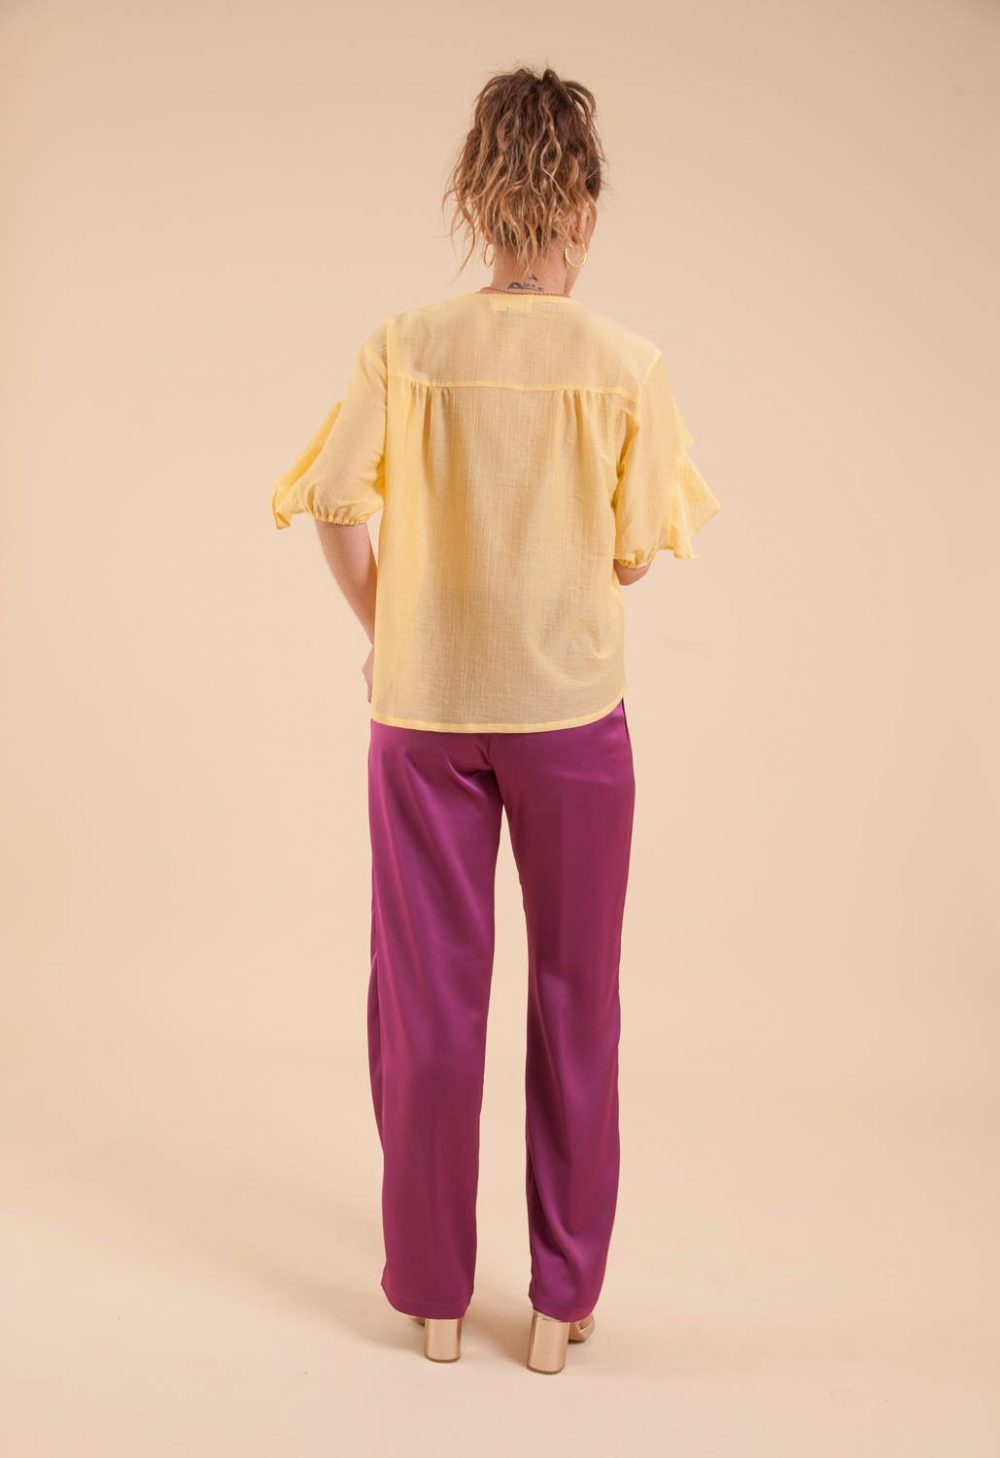 pantalon femme violet en polyester recyclé pour une mode durable.